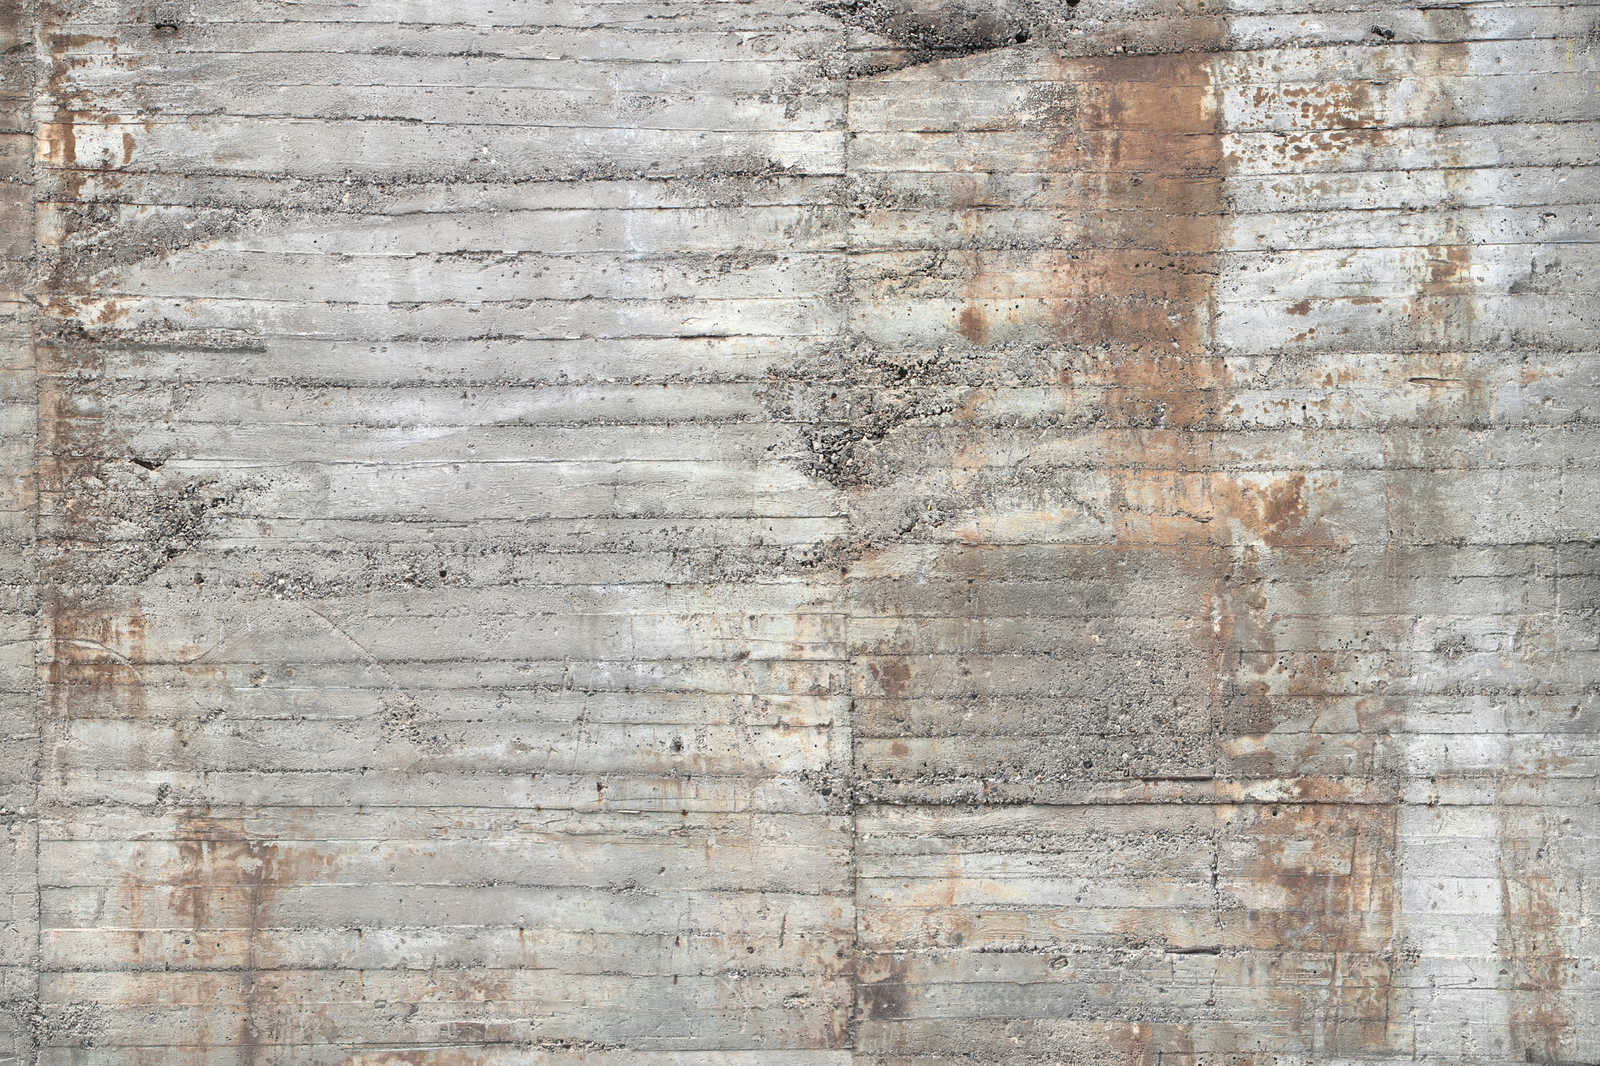             Concrete Canvas Painting Rustic Reinforced Concrete Grey Brown - 1.20 m x 0.80 m
        